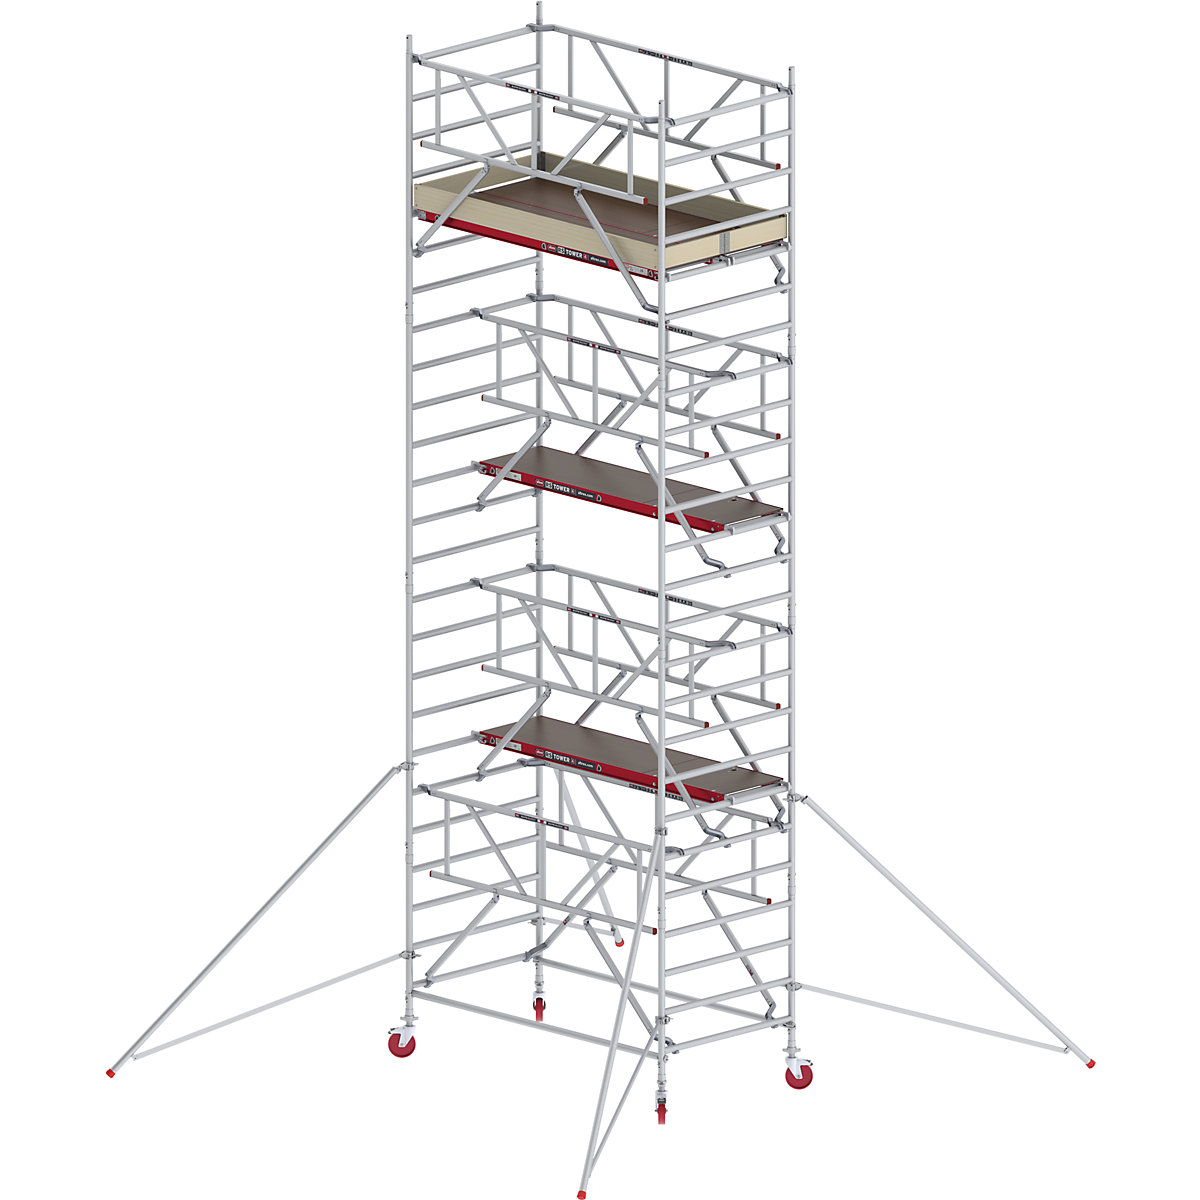 Trabattello mobile RS TOWER 42 largo con Safe-Quick® – Altrex, piattaforma in legno, lunghezza 2,45 m, altezza di lavoro 8,20 m-1